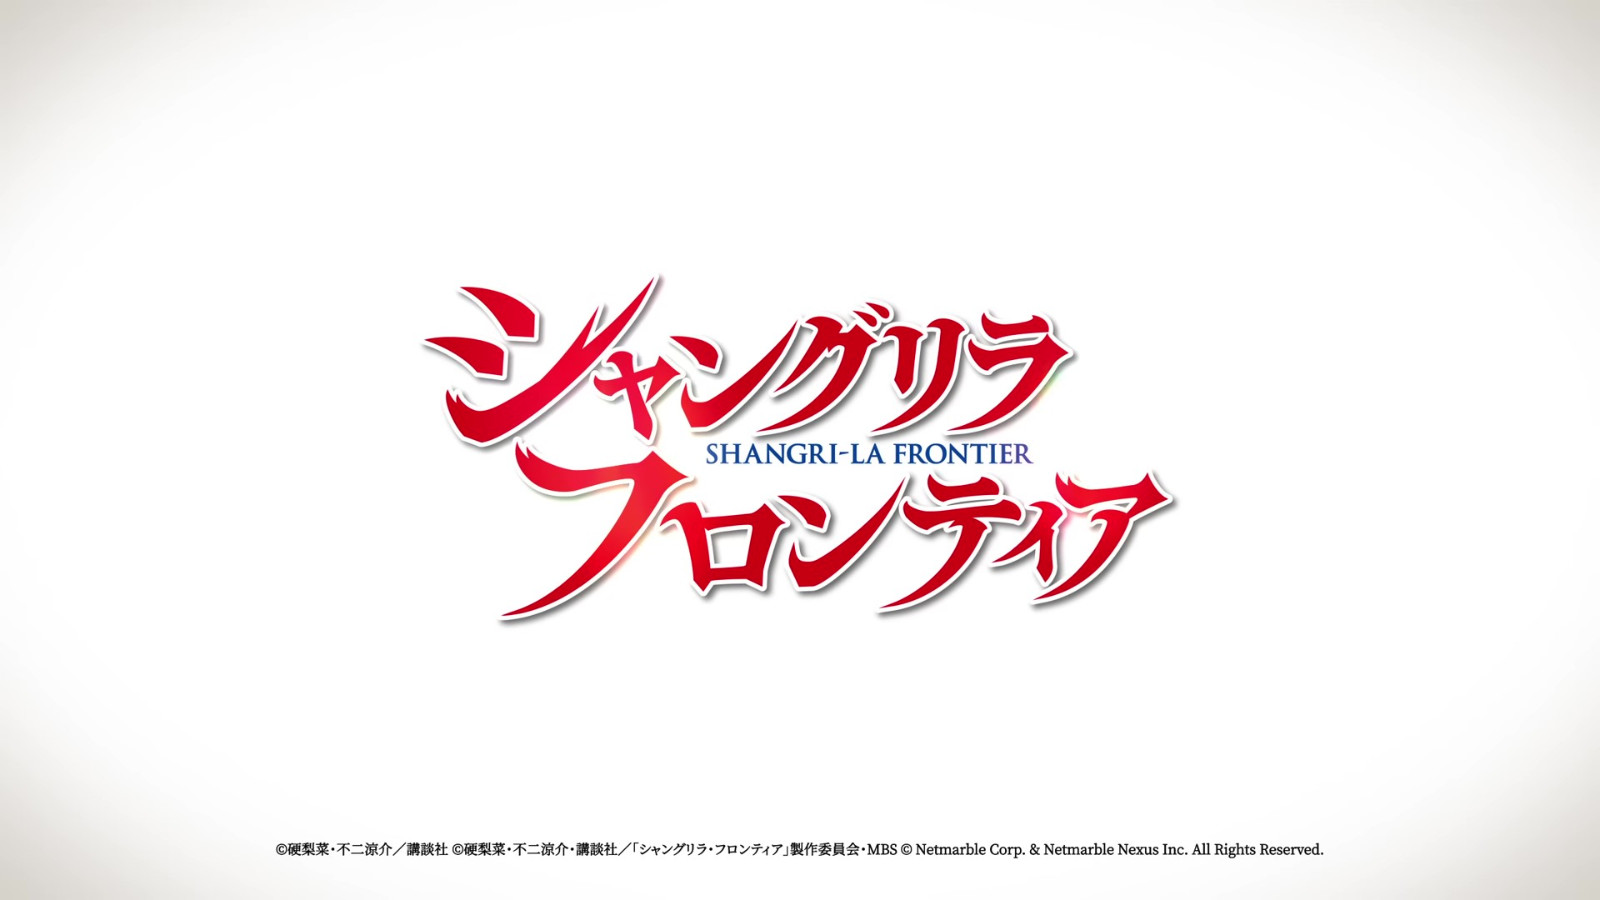 《香格里拉边境》游戏PV公开 发售日待定